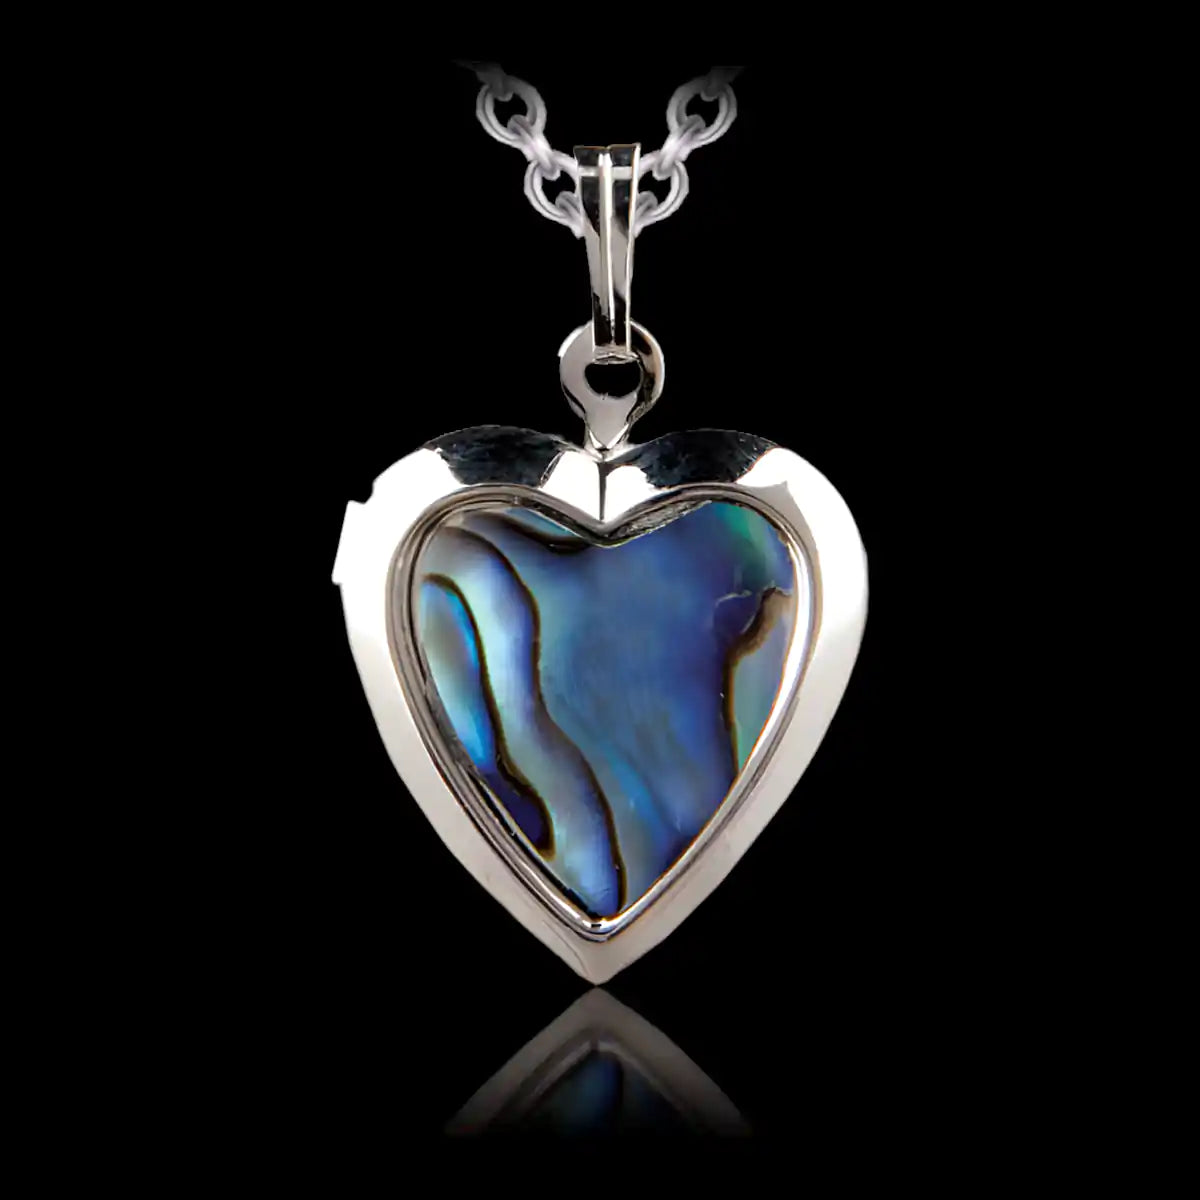 Glacier pearle heart locket necklace